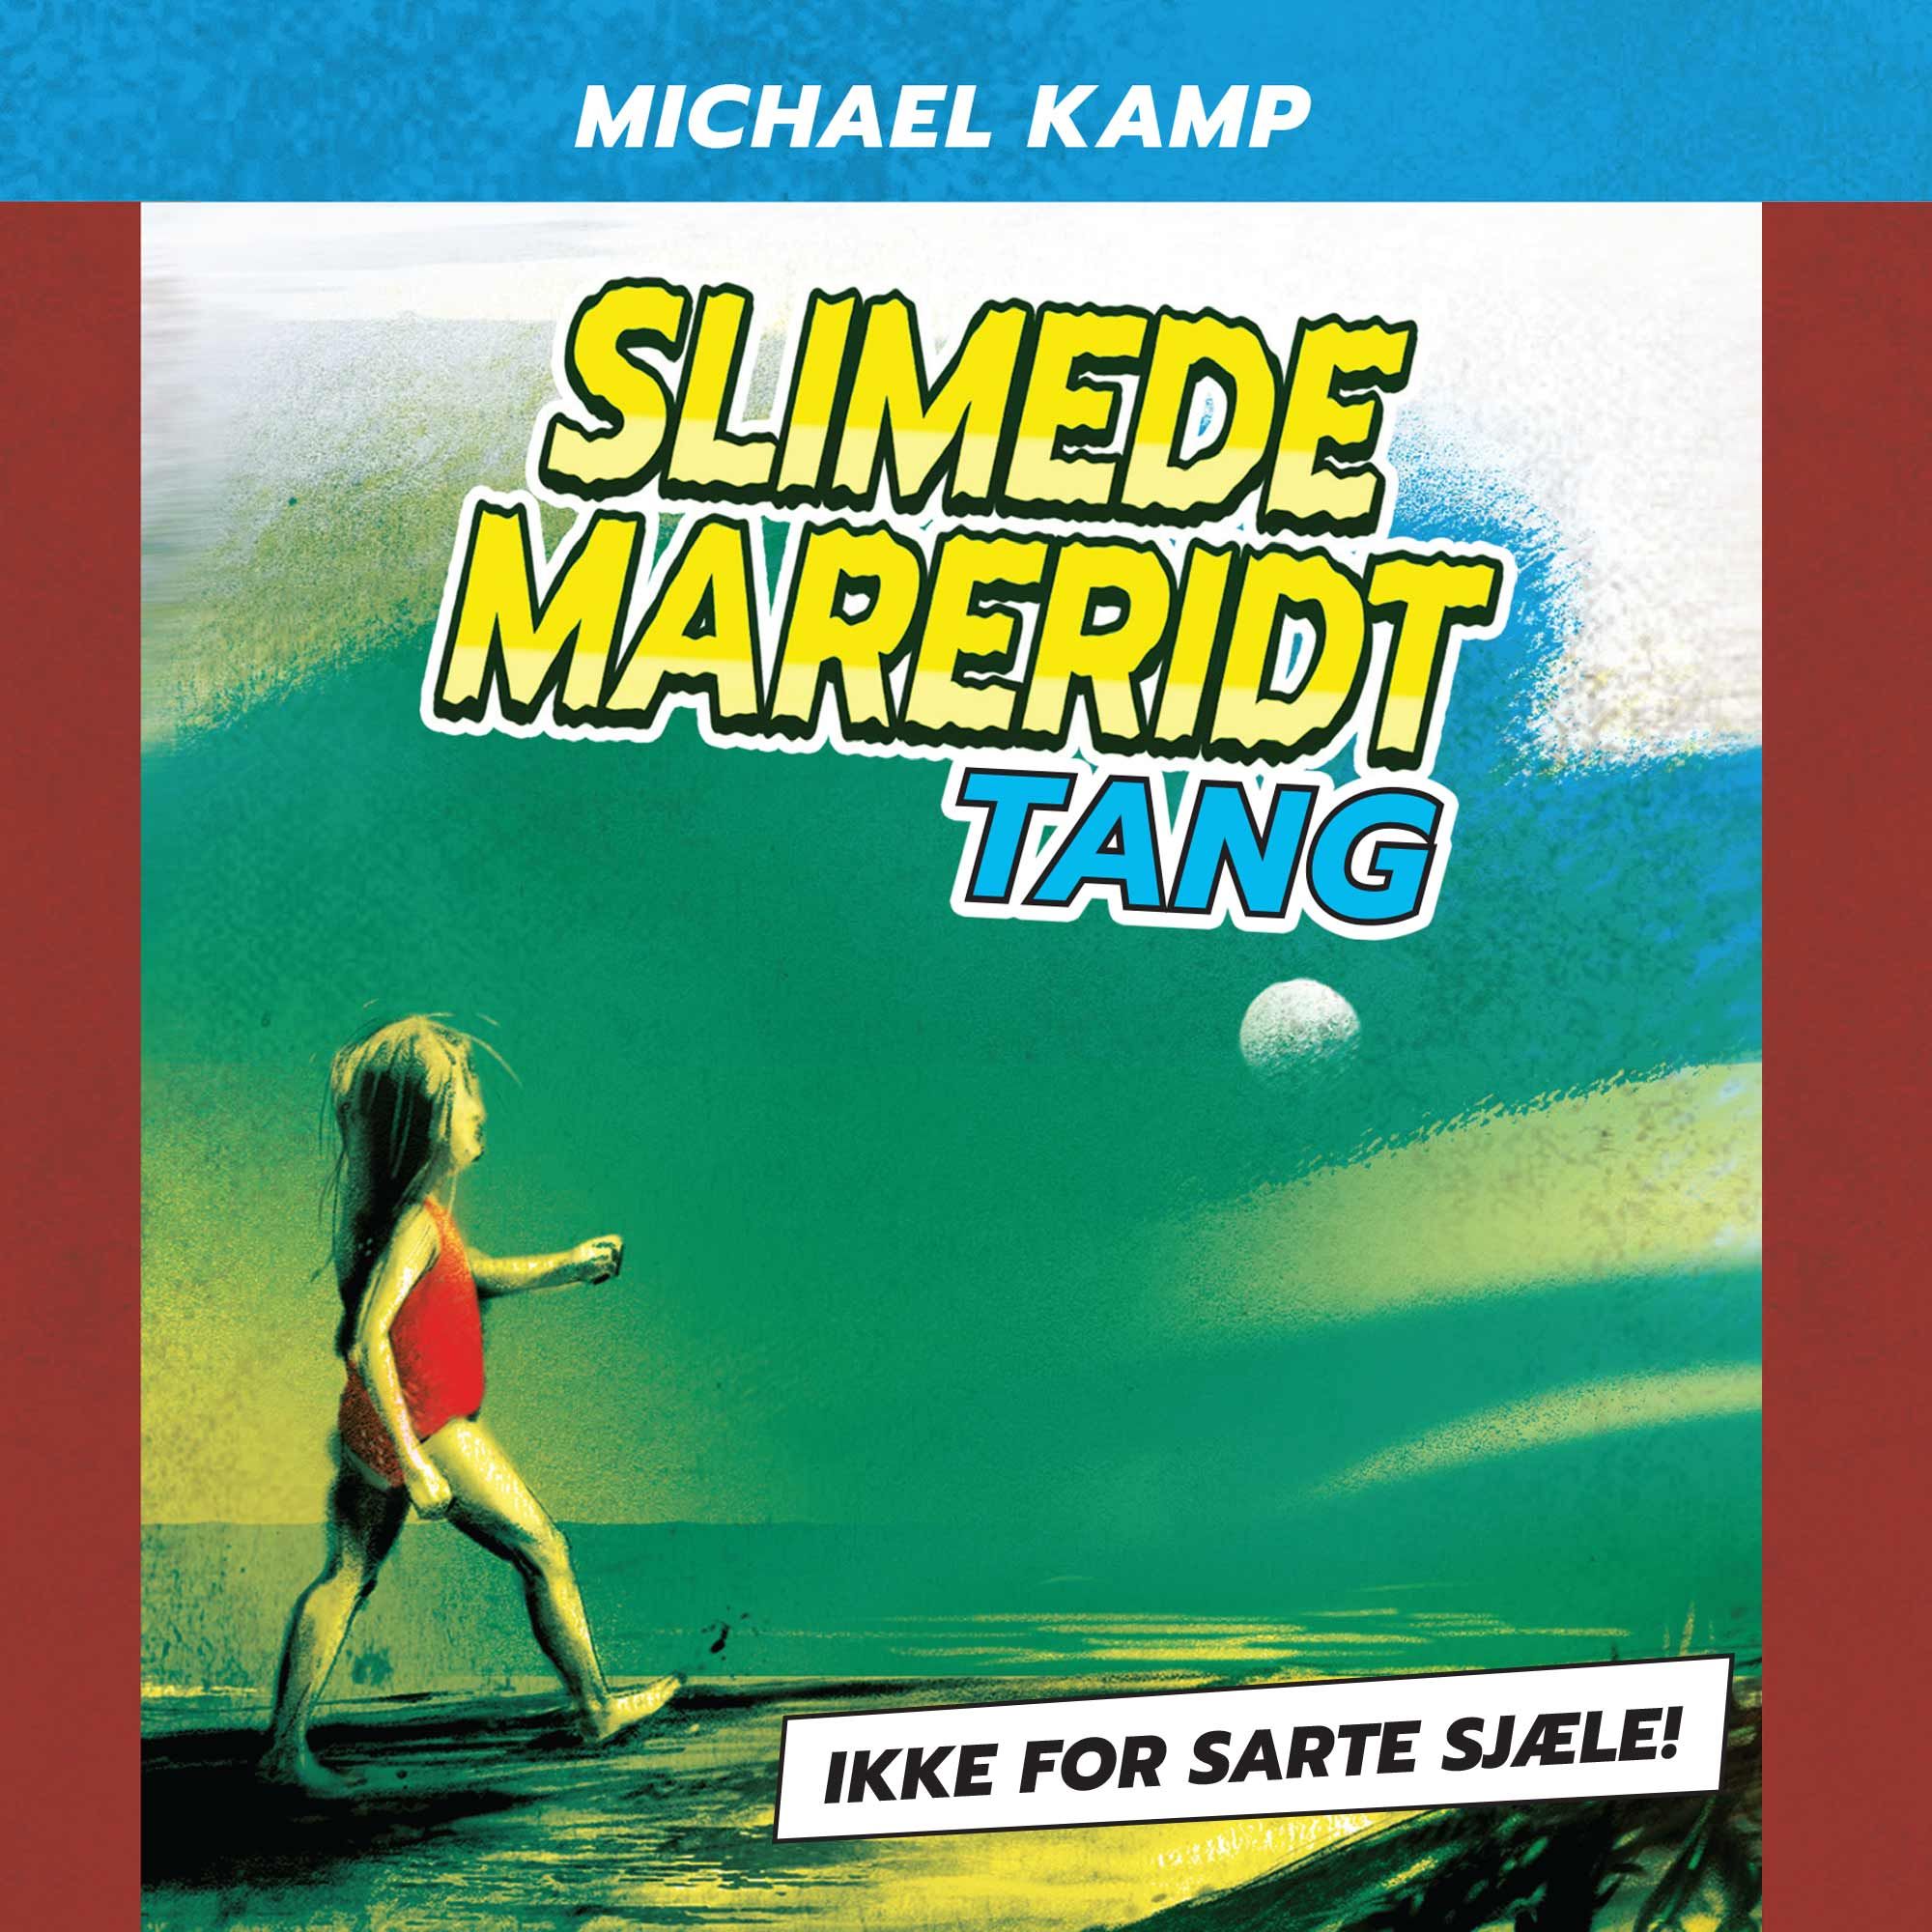 Slimede mareridt #1: Tang, ljudbok av Michael Kamp